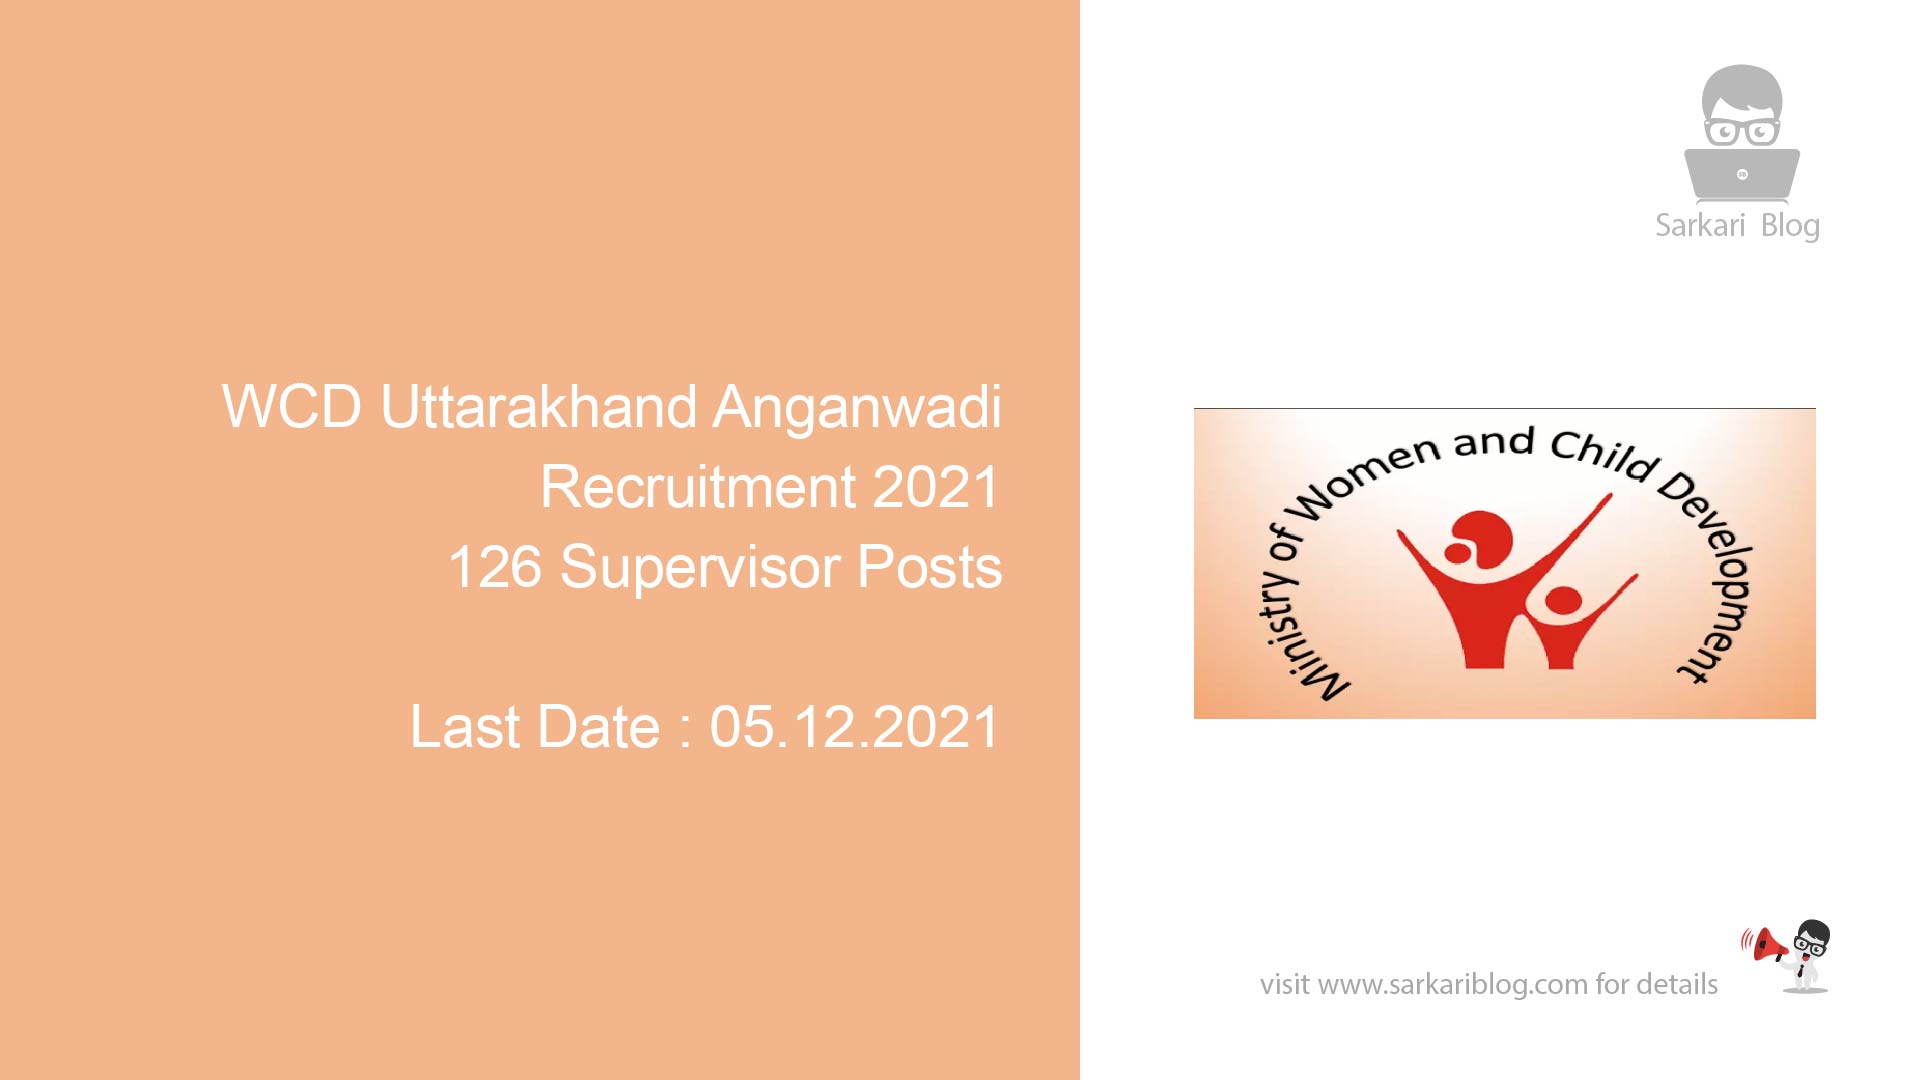 WCD Uttarakhand Anganwadi Recruitment 2021